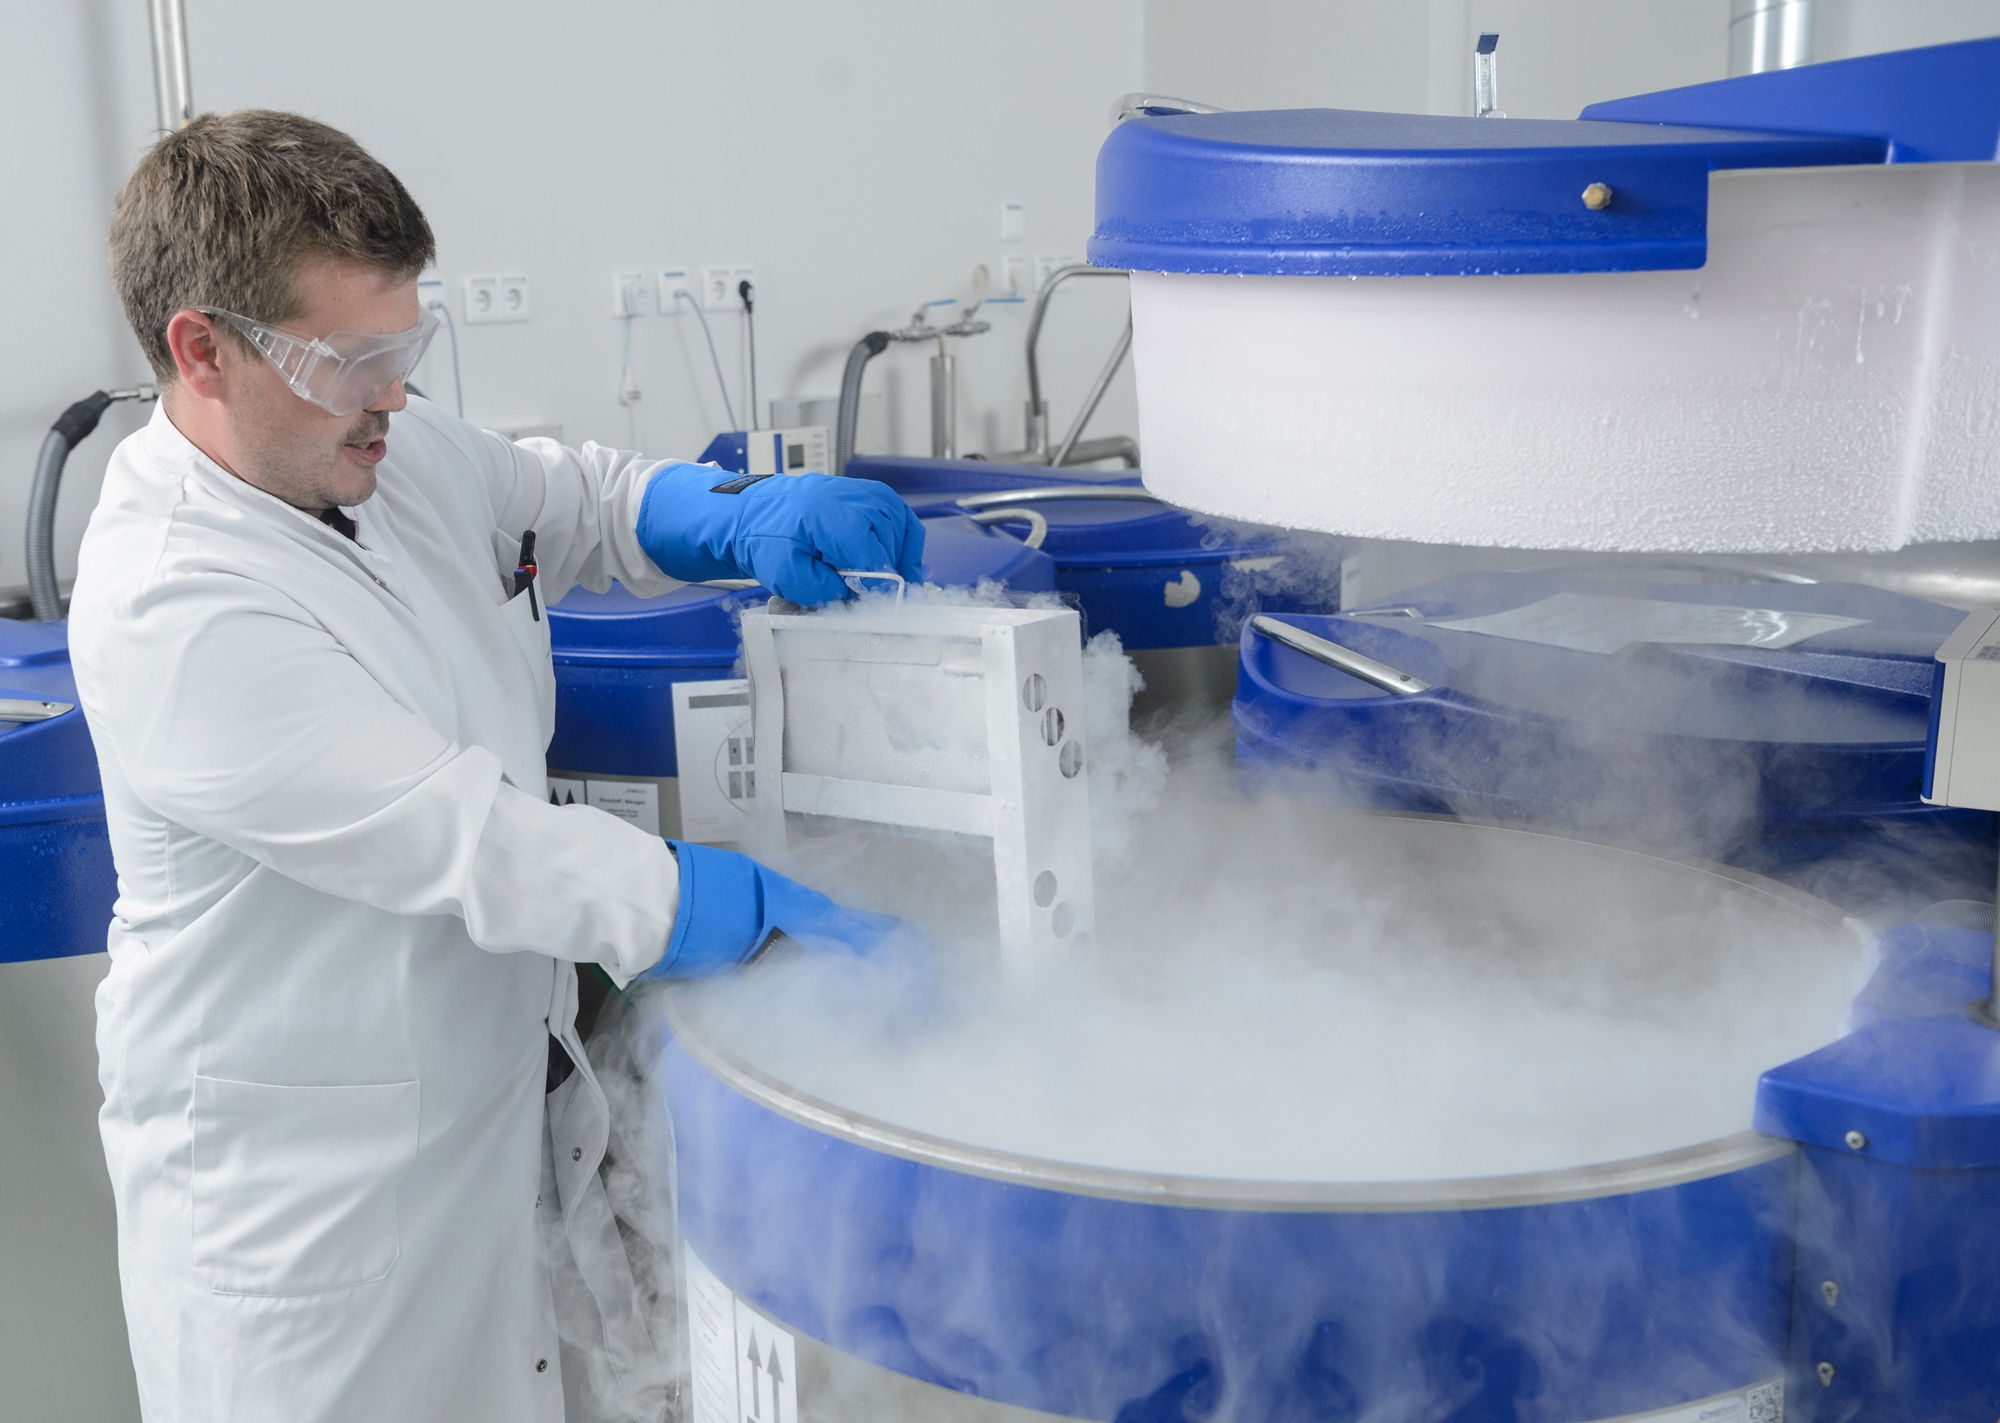 Gewonnene Stammzellen werden im GMP-Reinraumlabor unter hochsterilen Bedingungen tiefgefroren und in speziellen Stickstofftanks bei Temperaturen unter -140 °C gelagert.